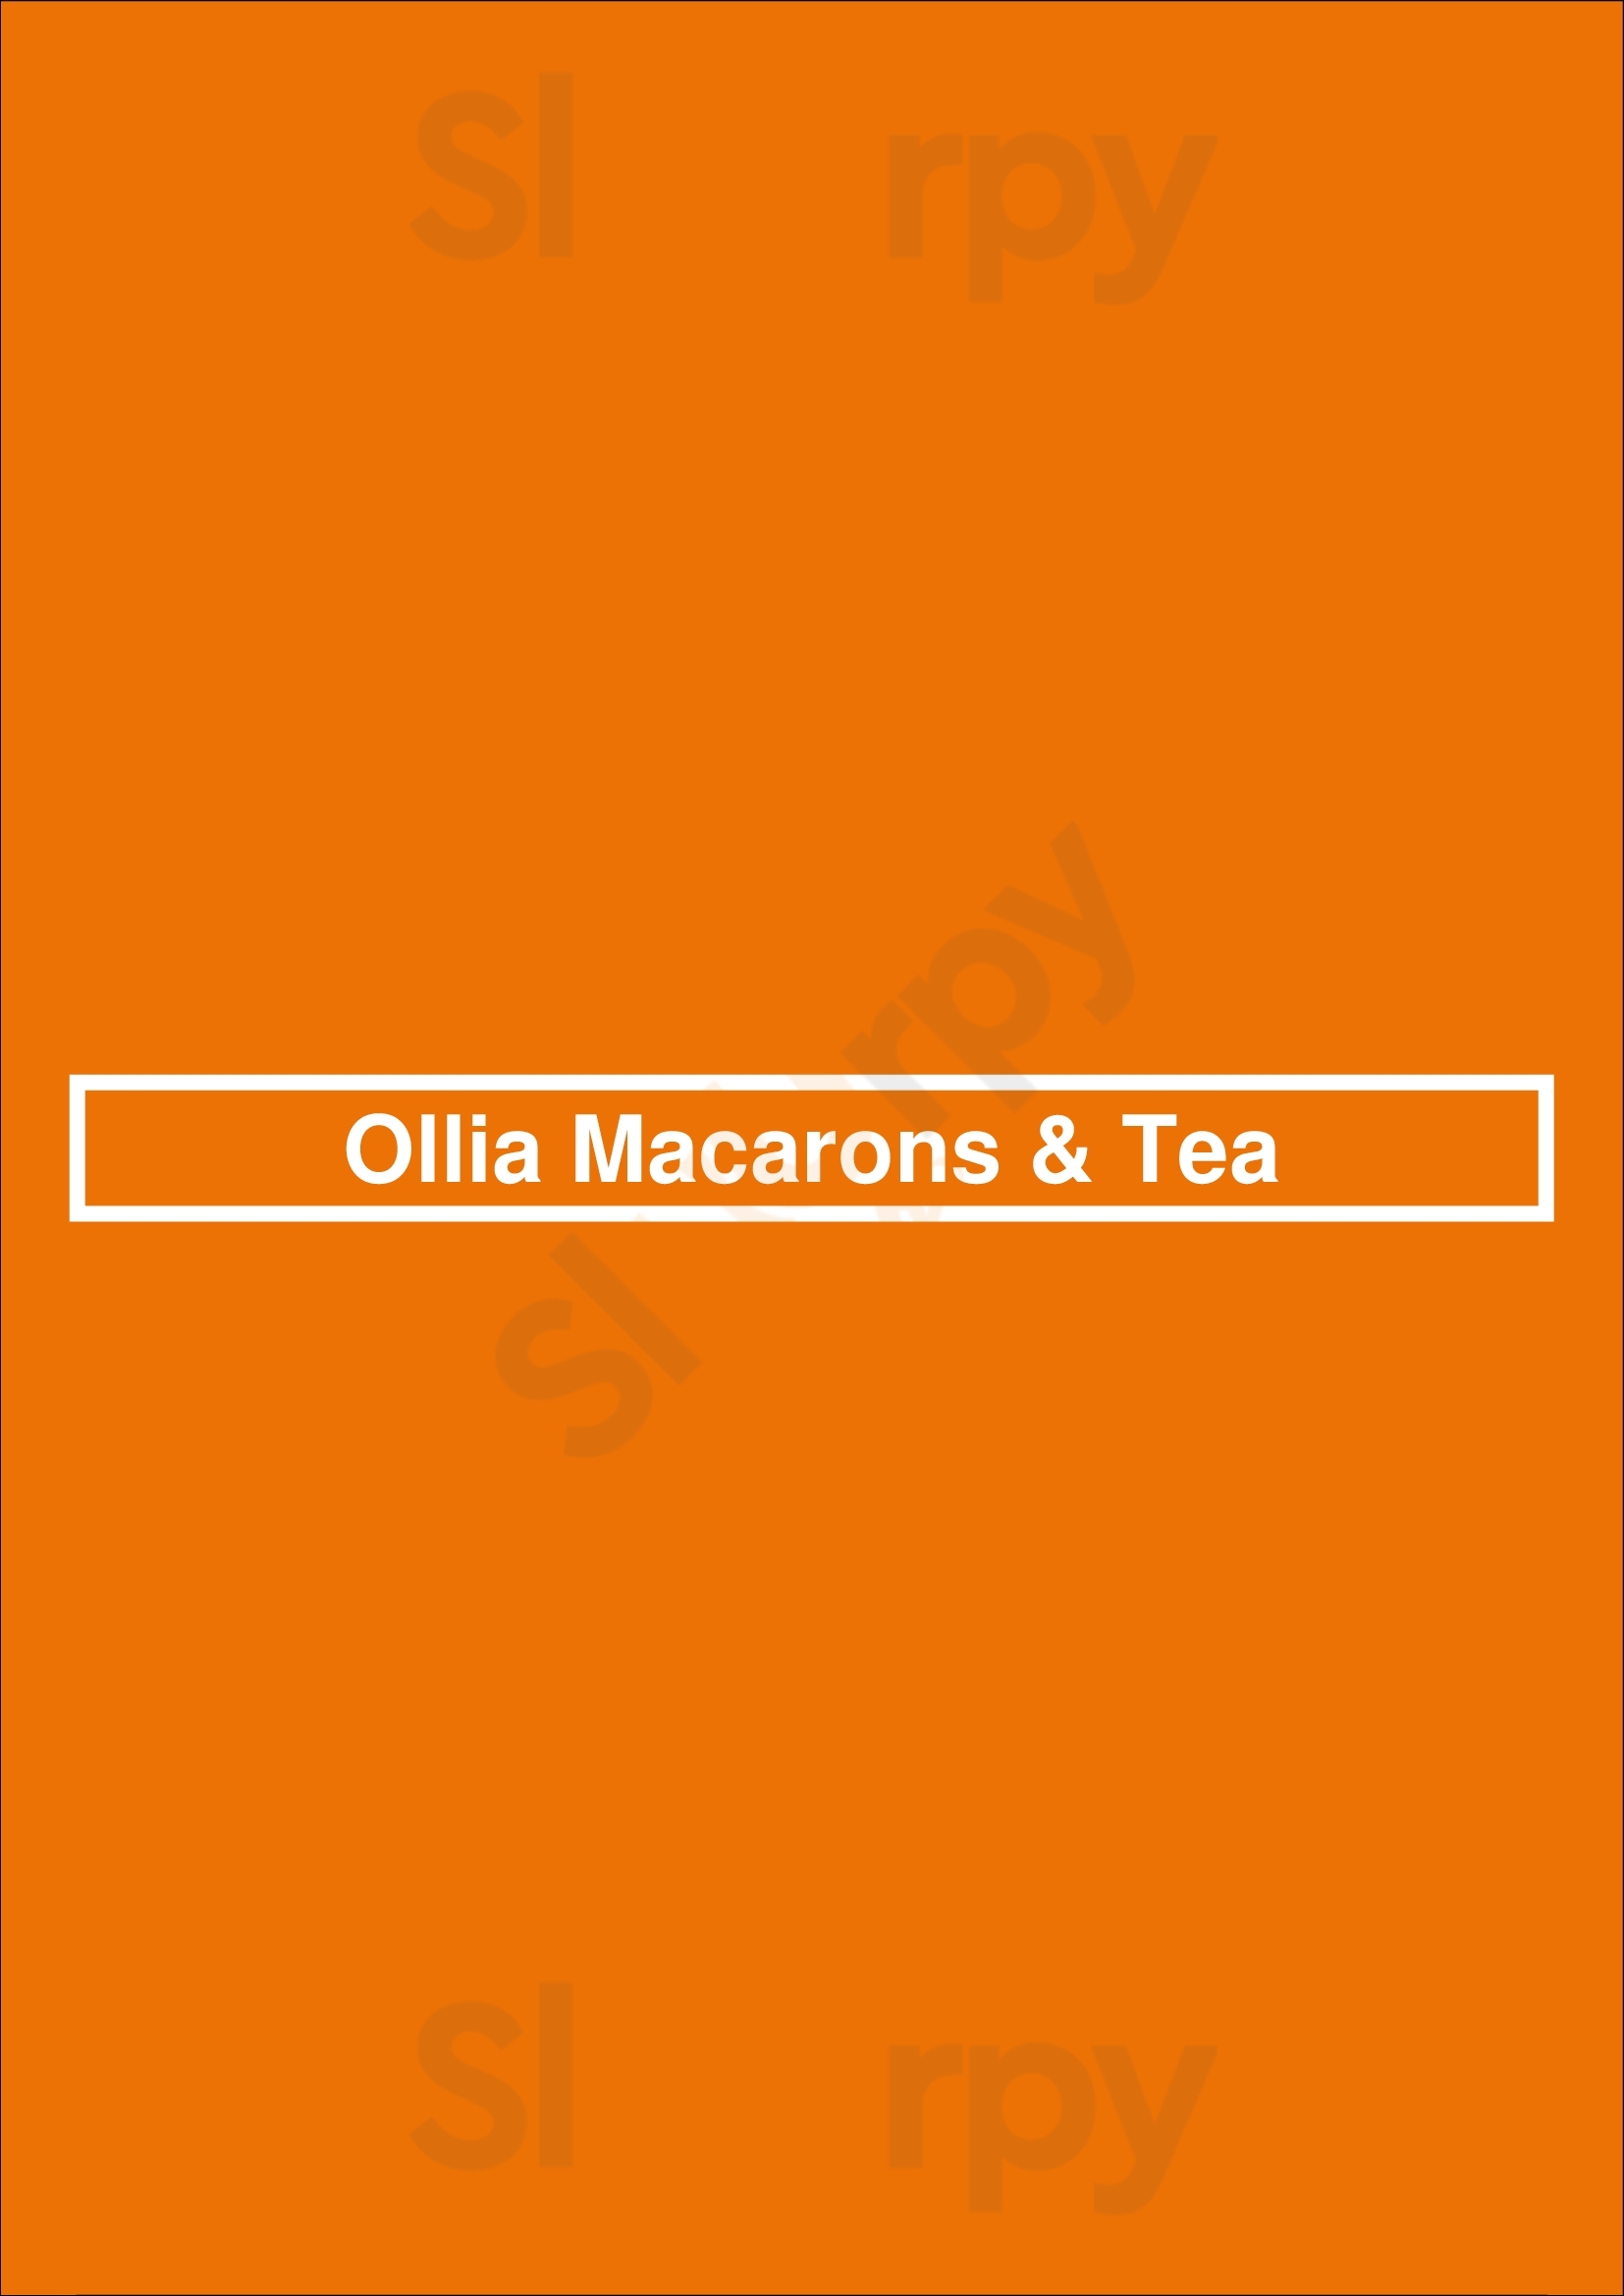 Ollia Macarons & Tea Calgary Menu - 1